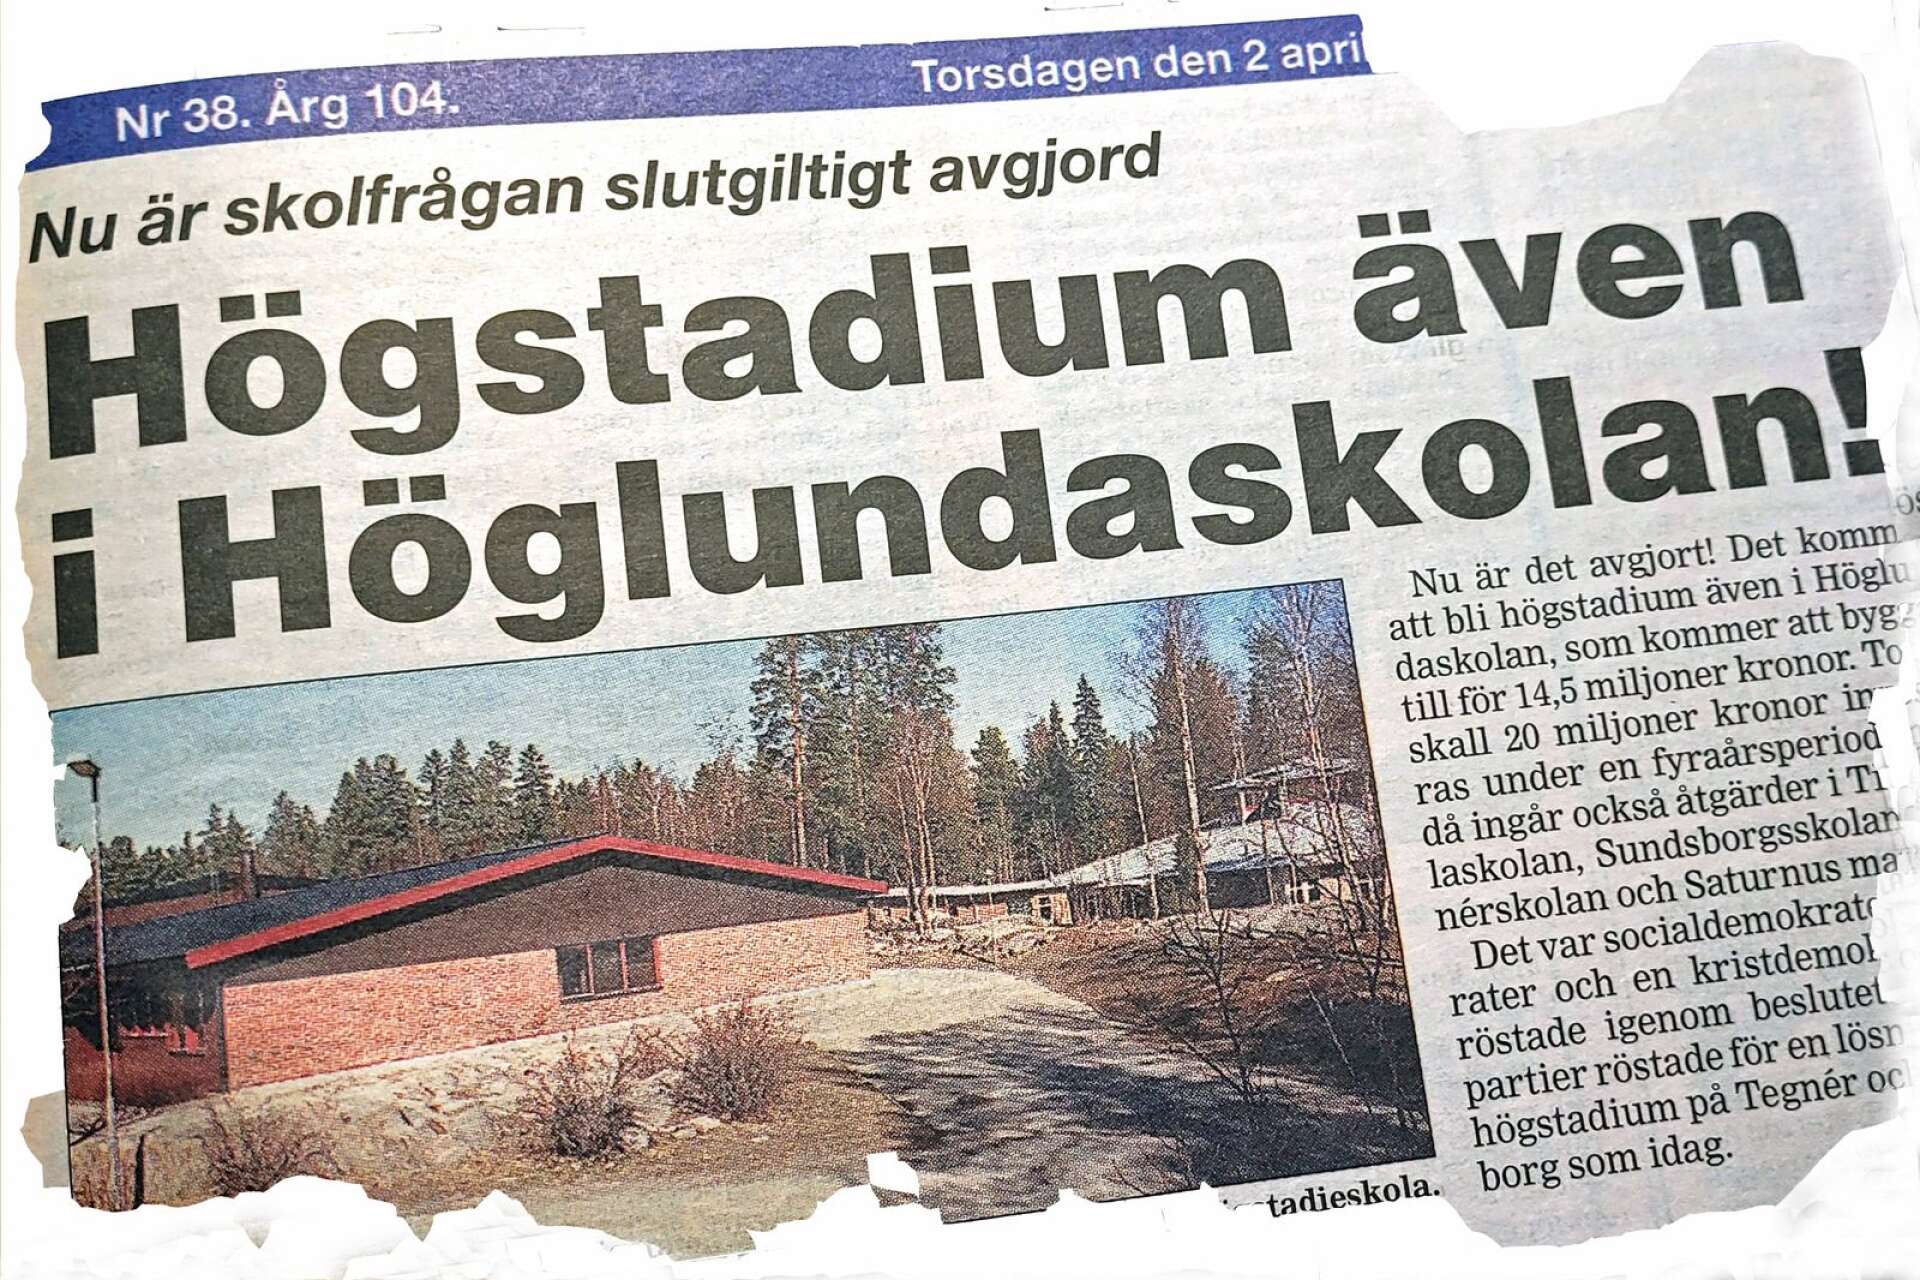 Det var i april 1998 som beslutet togs att Höglundaskolan skulle byggas om för att även ha plats för högstadium. Det var ett omdiskuterat beslut eftersom alla utom socialdemokraterna och en kristdemokrat ville behålla Tegnér och Sundsborg som de var. 